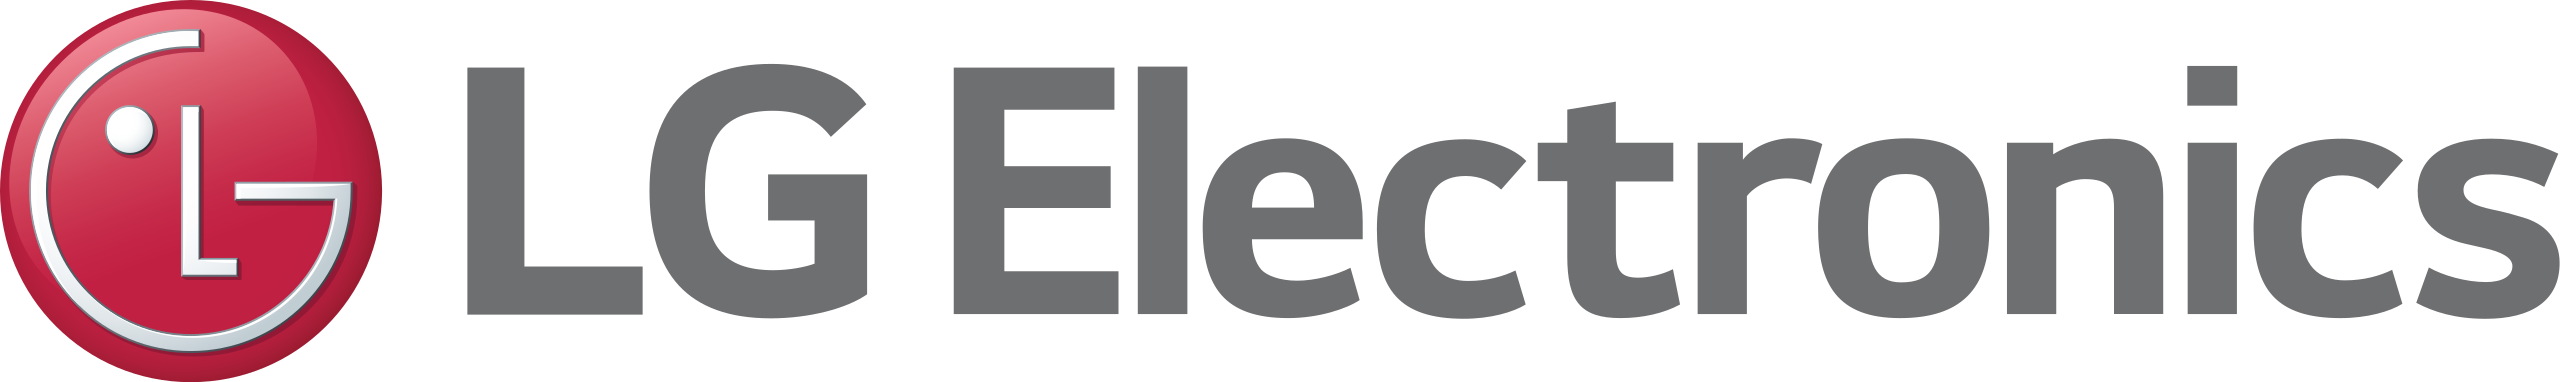 LG_Electronics_logo_2015_(english).svg